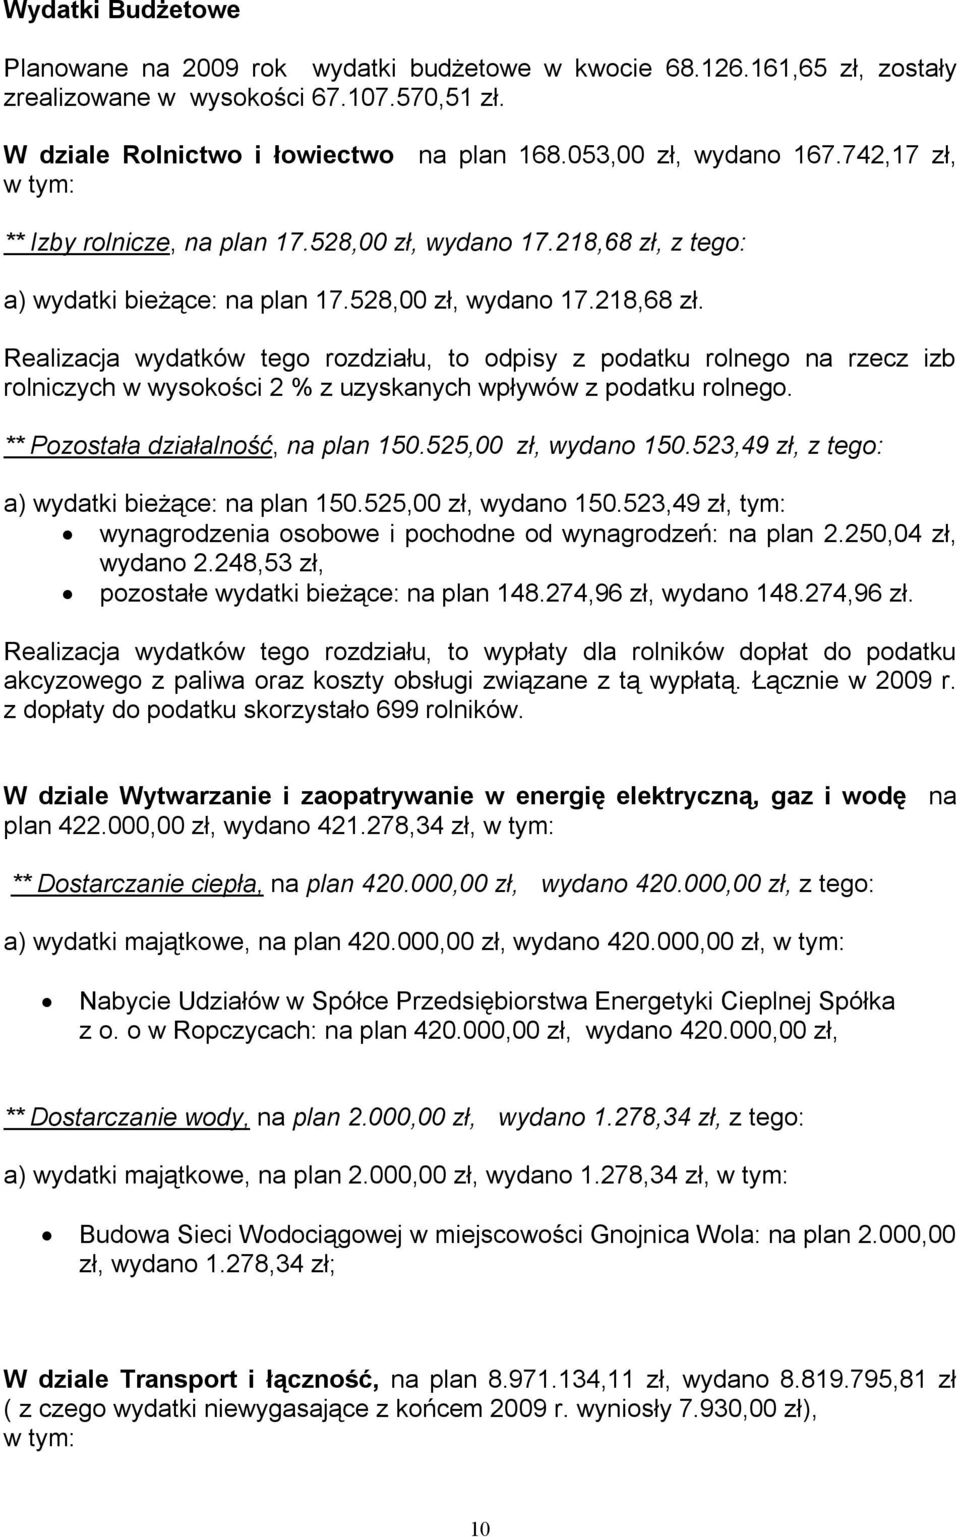 a) wydatki bieżące: na plan 17.528,00 zł, wydano 17.218,68 zł.